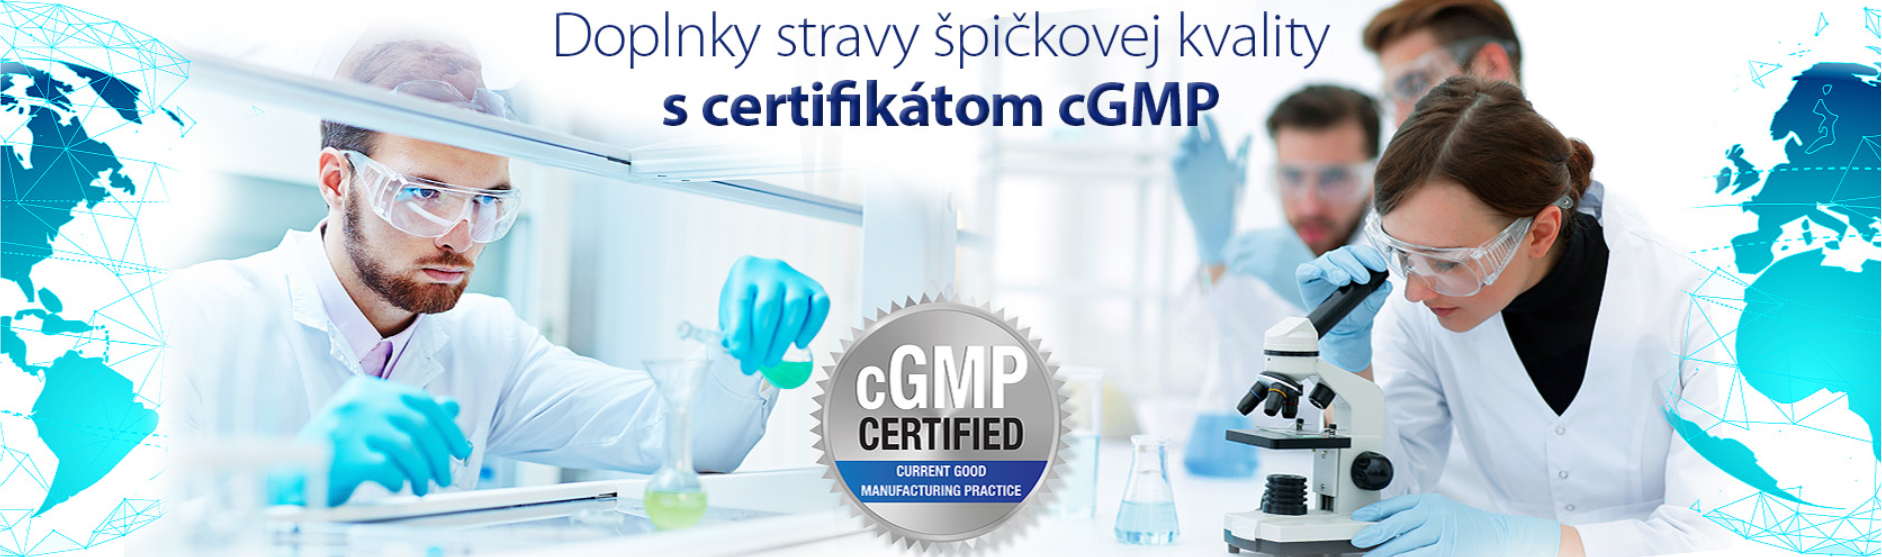 Doplnky stravys certifikátom cGMP